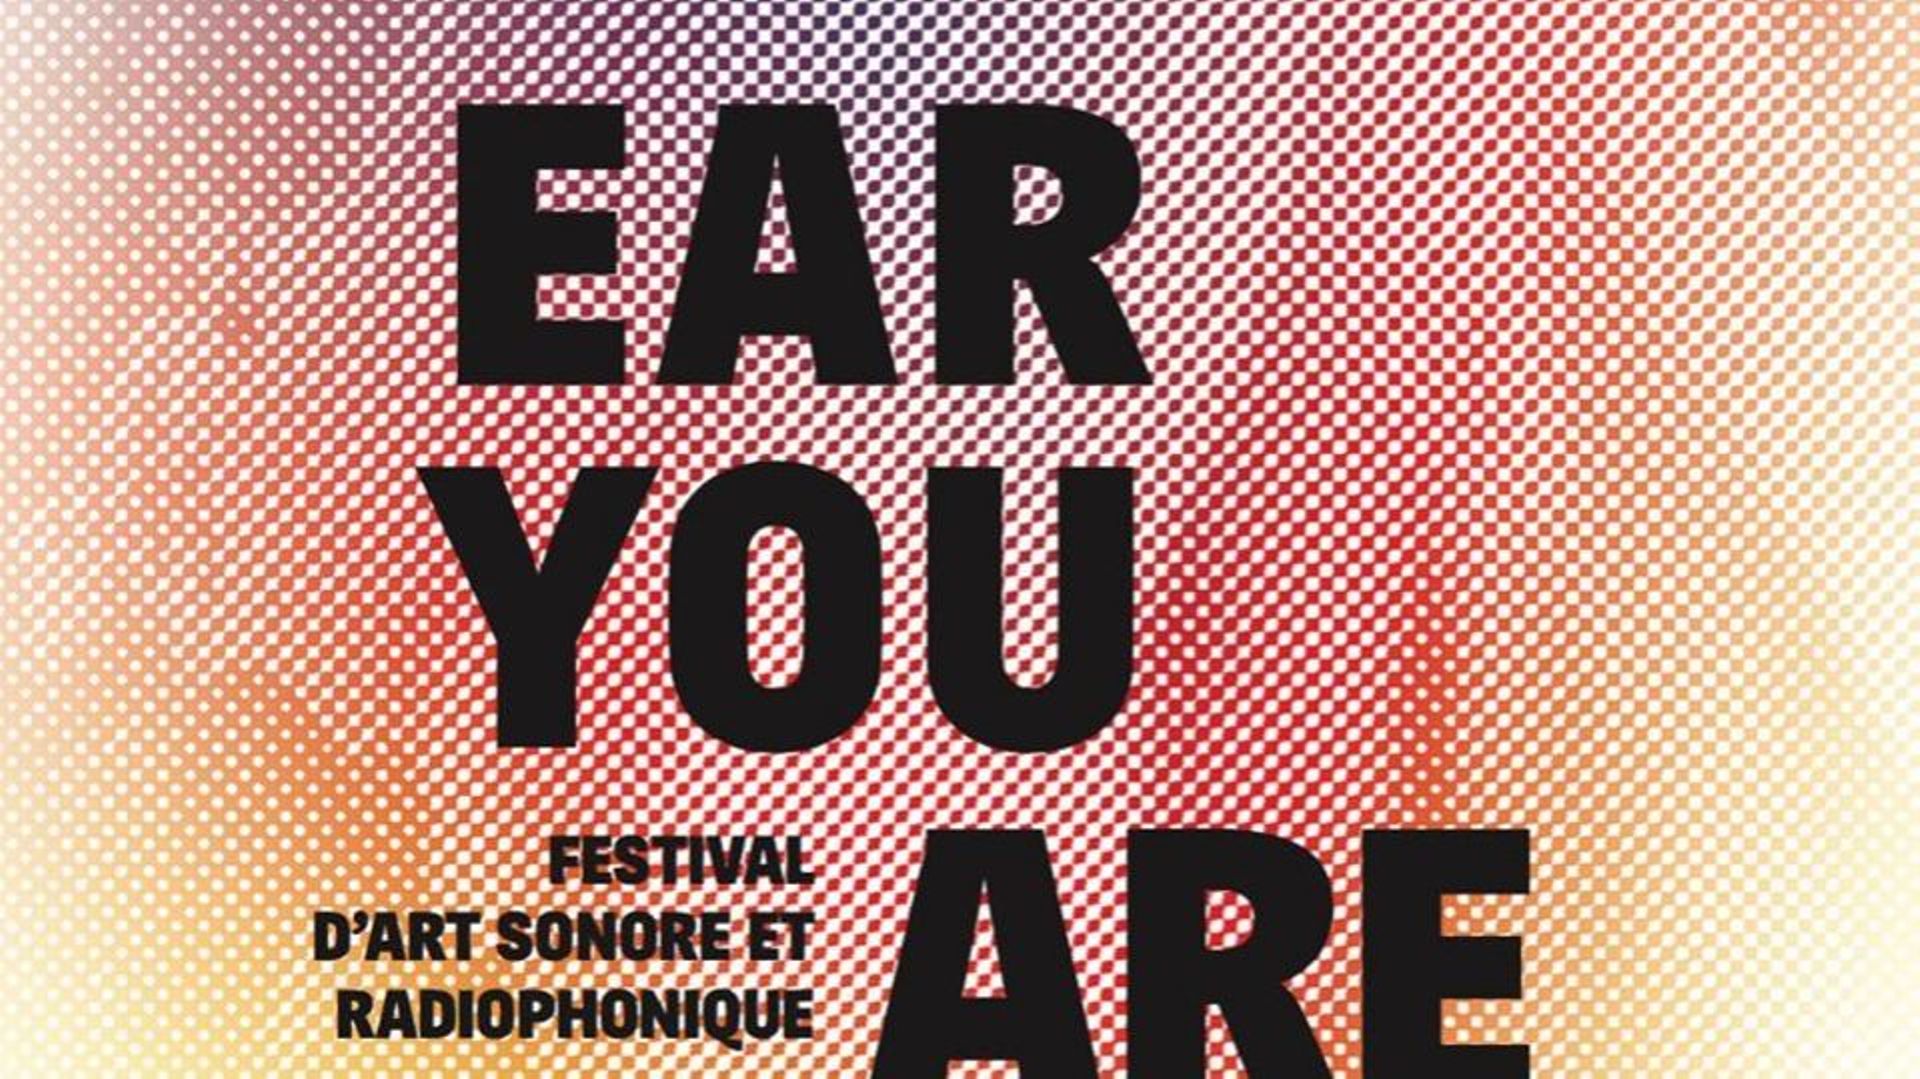 Un festival d'art sonore et radiophonique débarque bientôt à Bruxelles